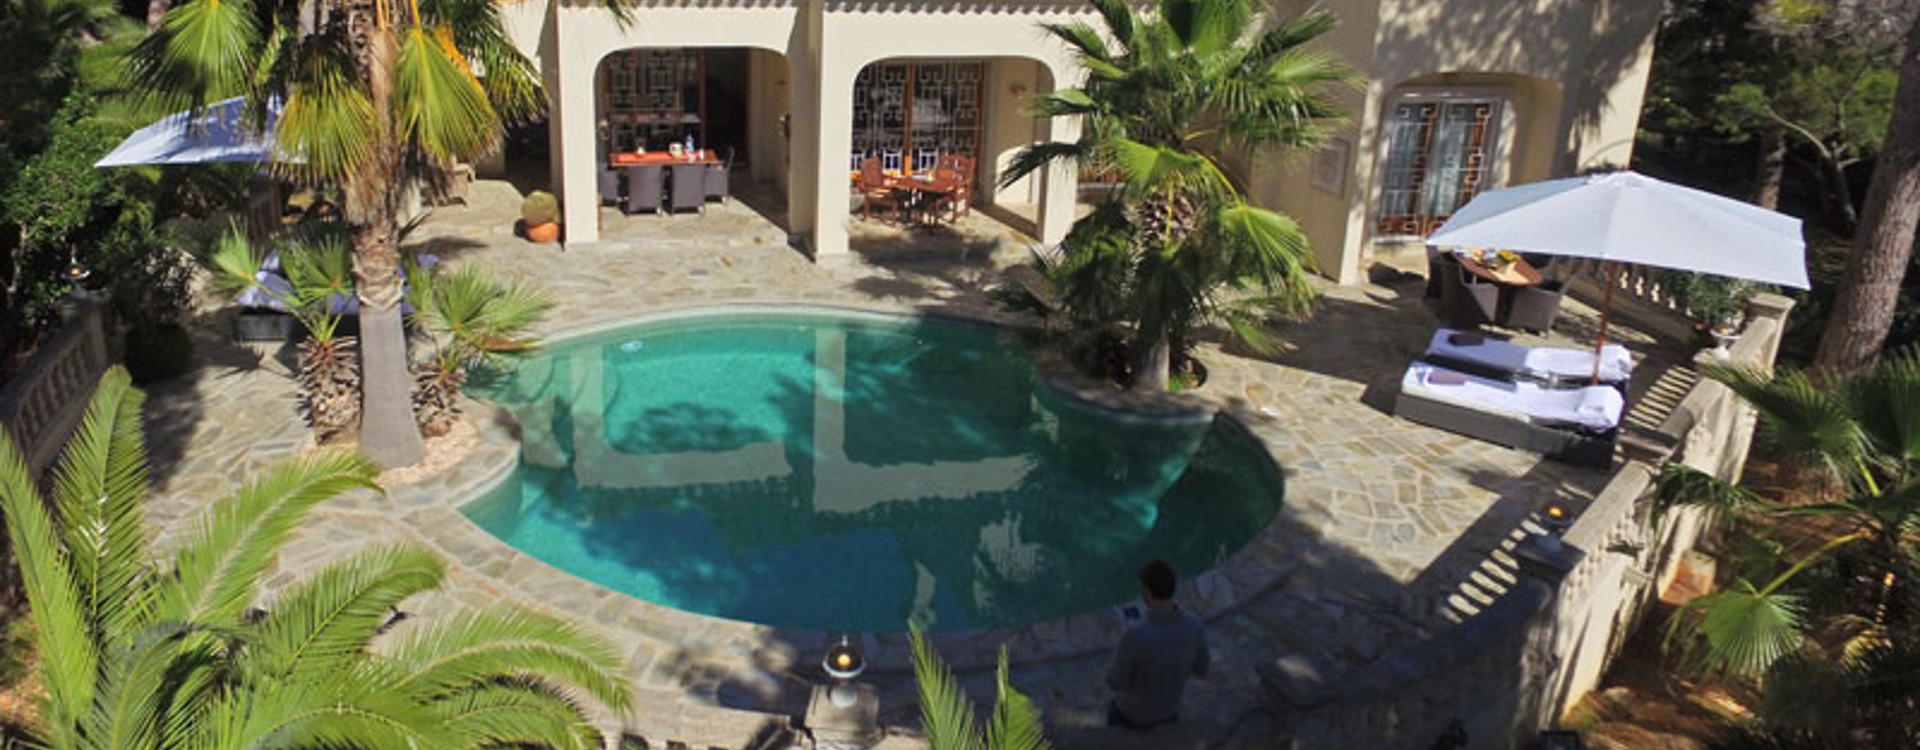 Villa Llenya te huur op ibiza - zwembad